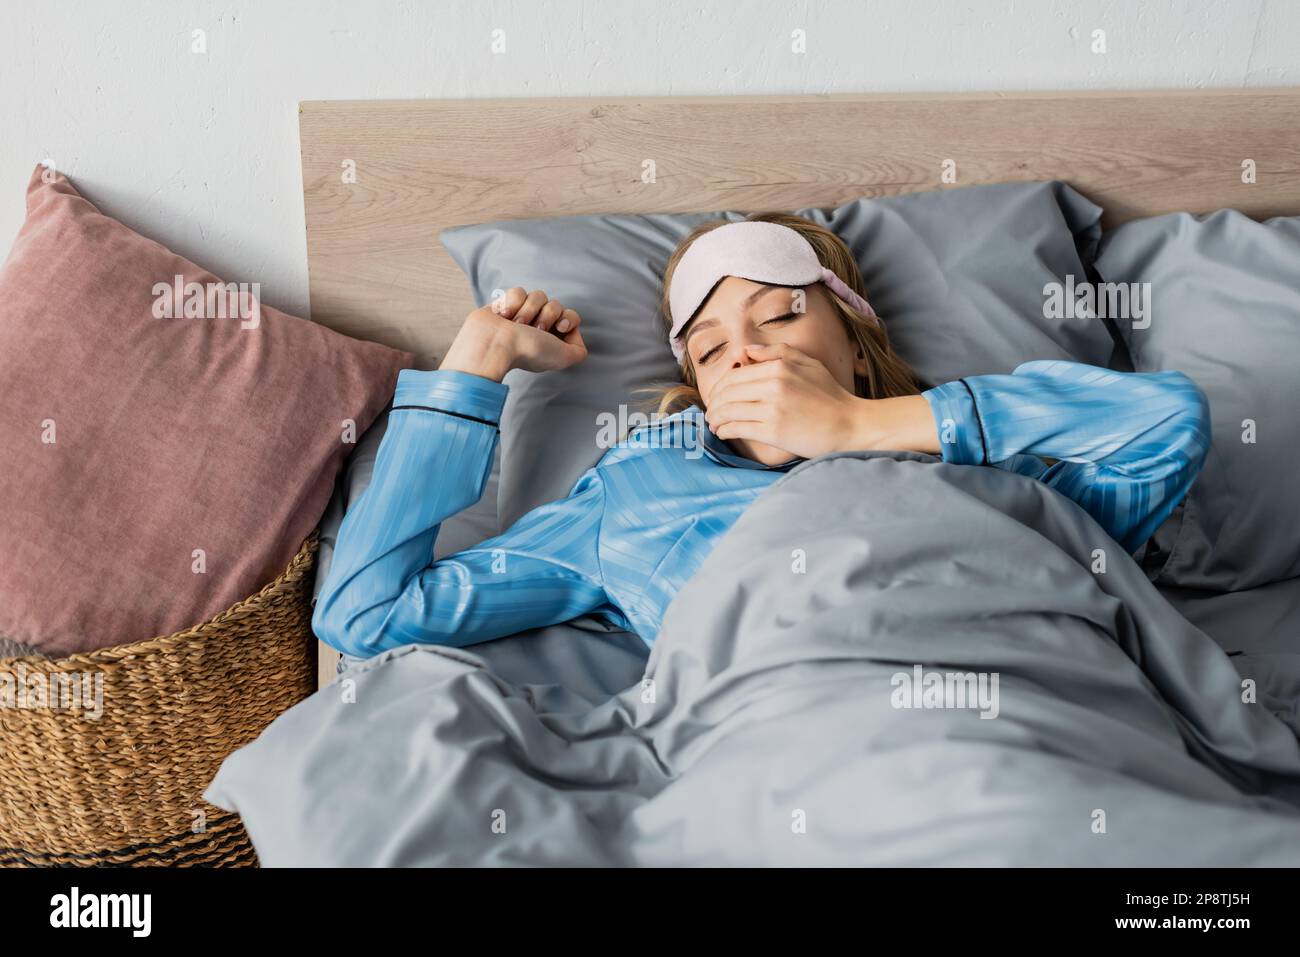 donna addormentata in pajama di seta e maschera notturna che sbadigna e copre la bocca mentre sdraiata a letto, immagine stock Foto Stock